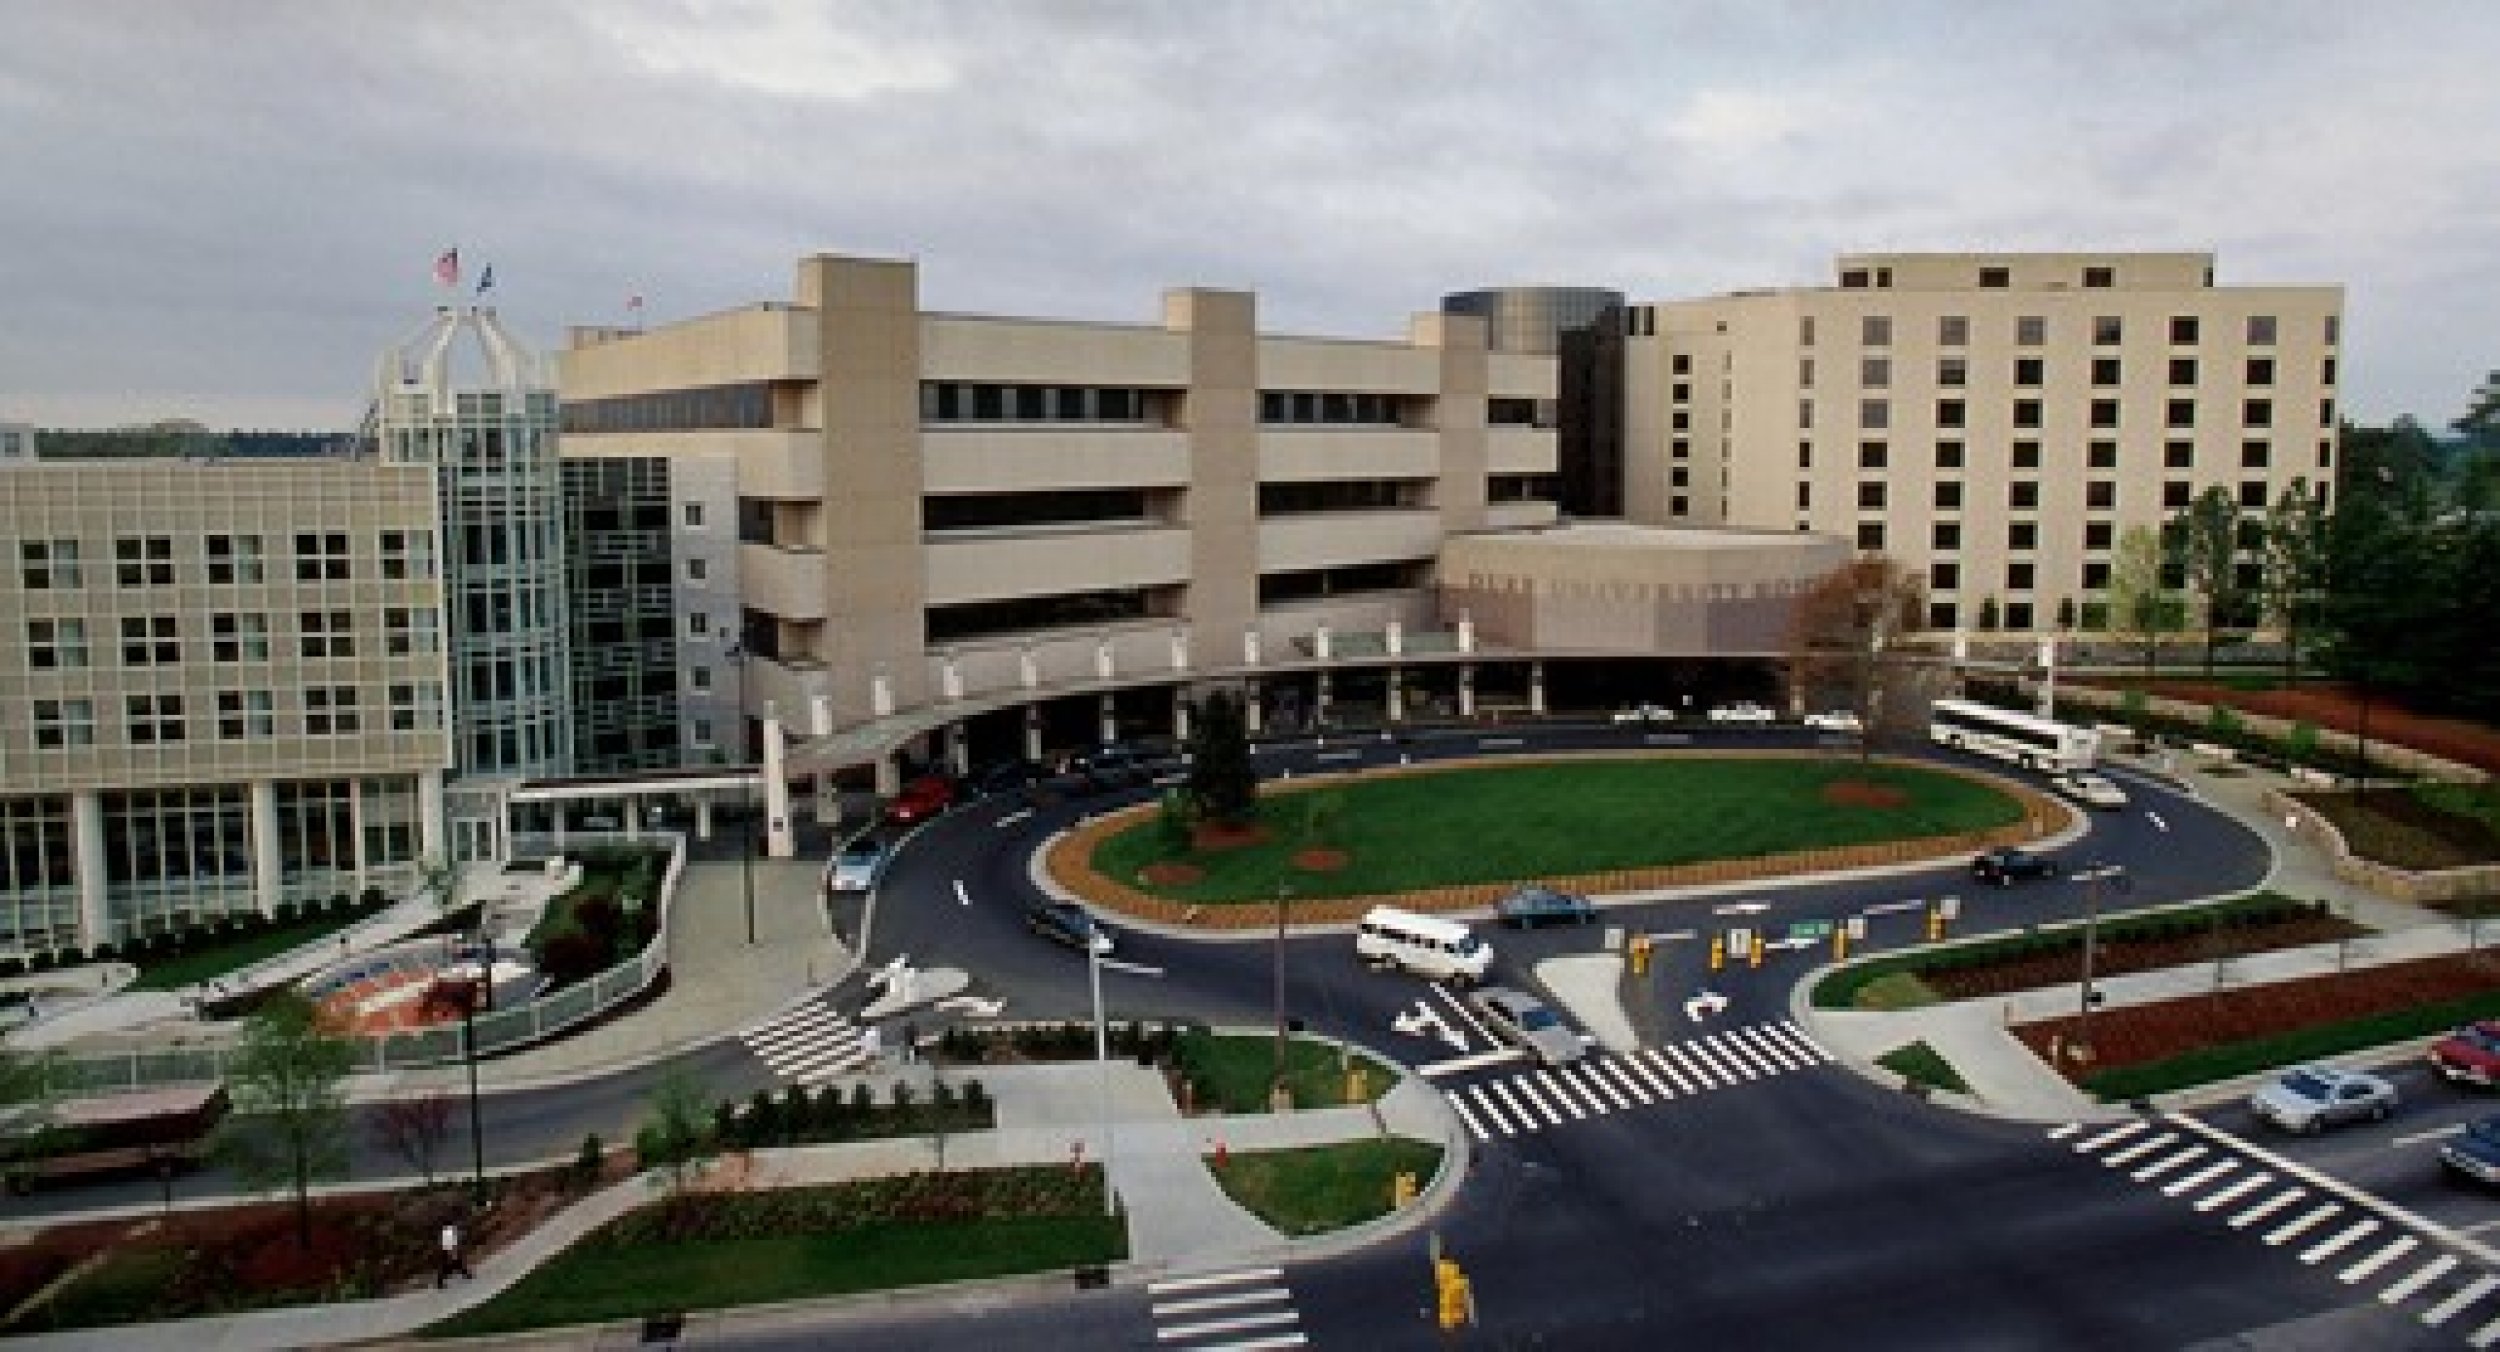 9 Duke University Medical Center, Durham, N.C.